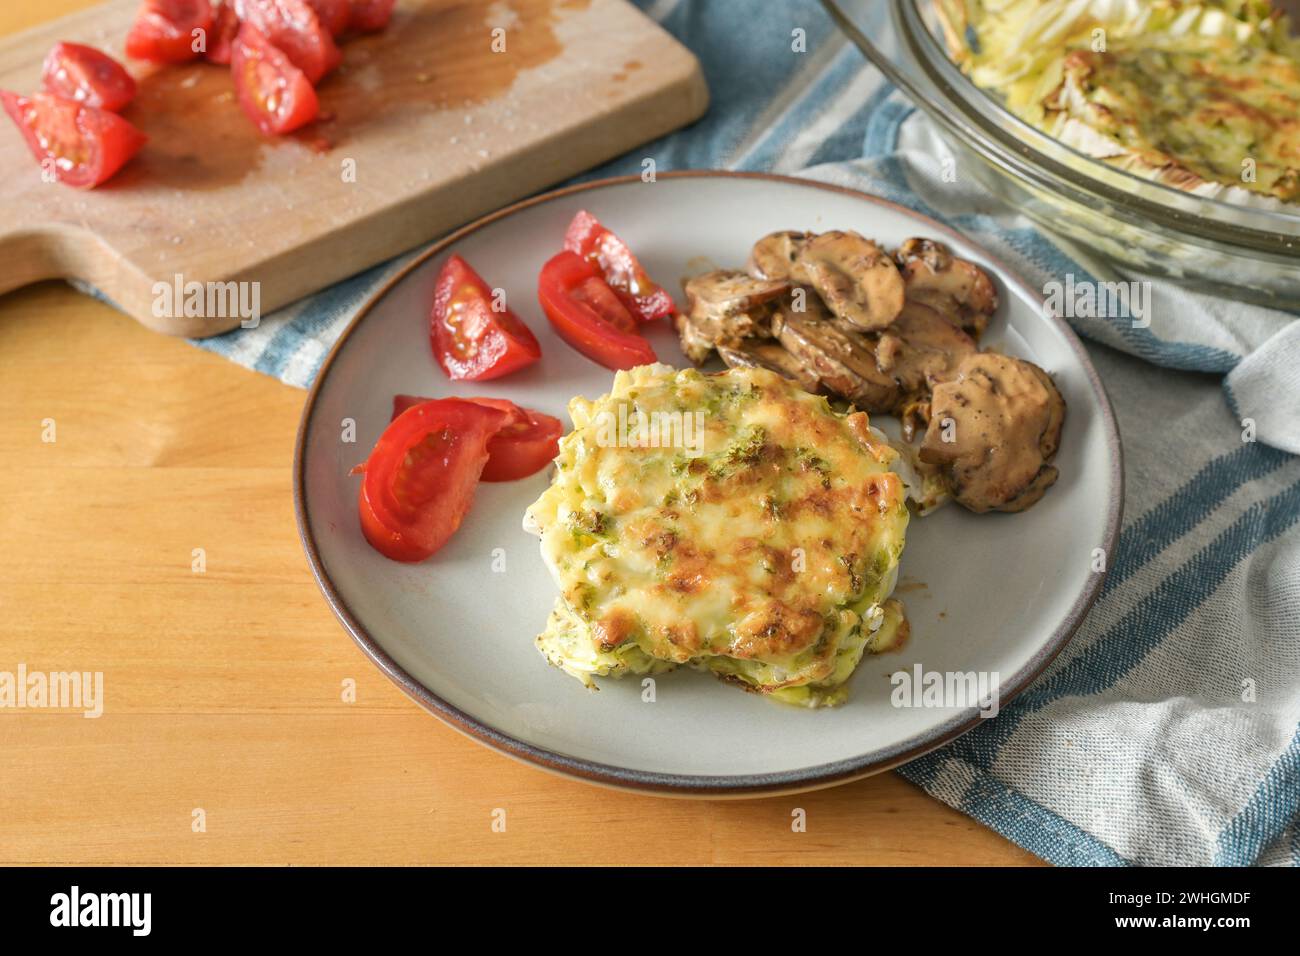 Gratinierter Chinakohl mit Pilzen und Tomaten, gesundes vegetarisches Gericht auf einem Holztisch, Kopierraum, ausgewählter Fokus Stockfoto